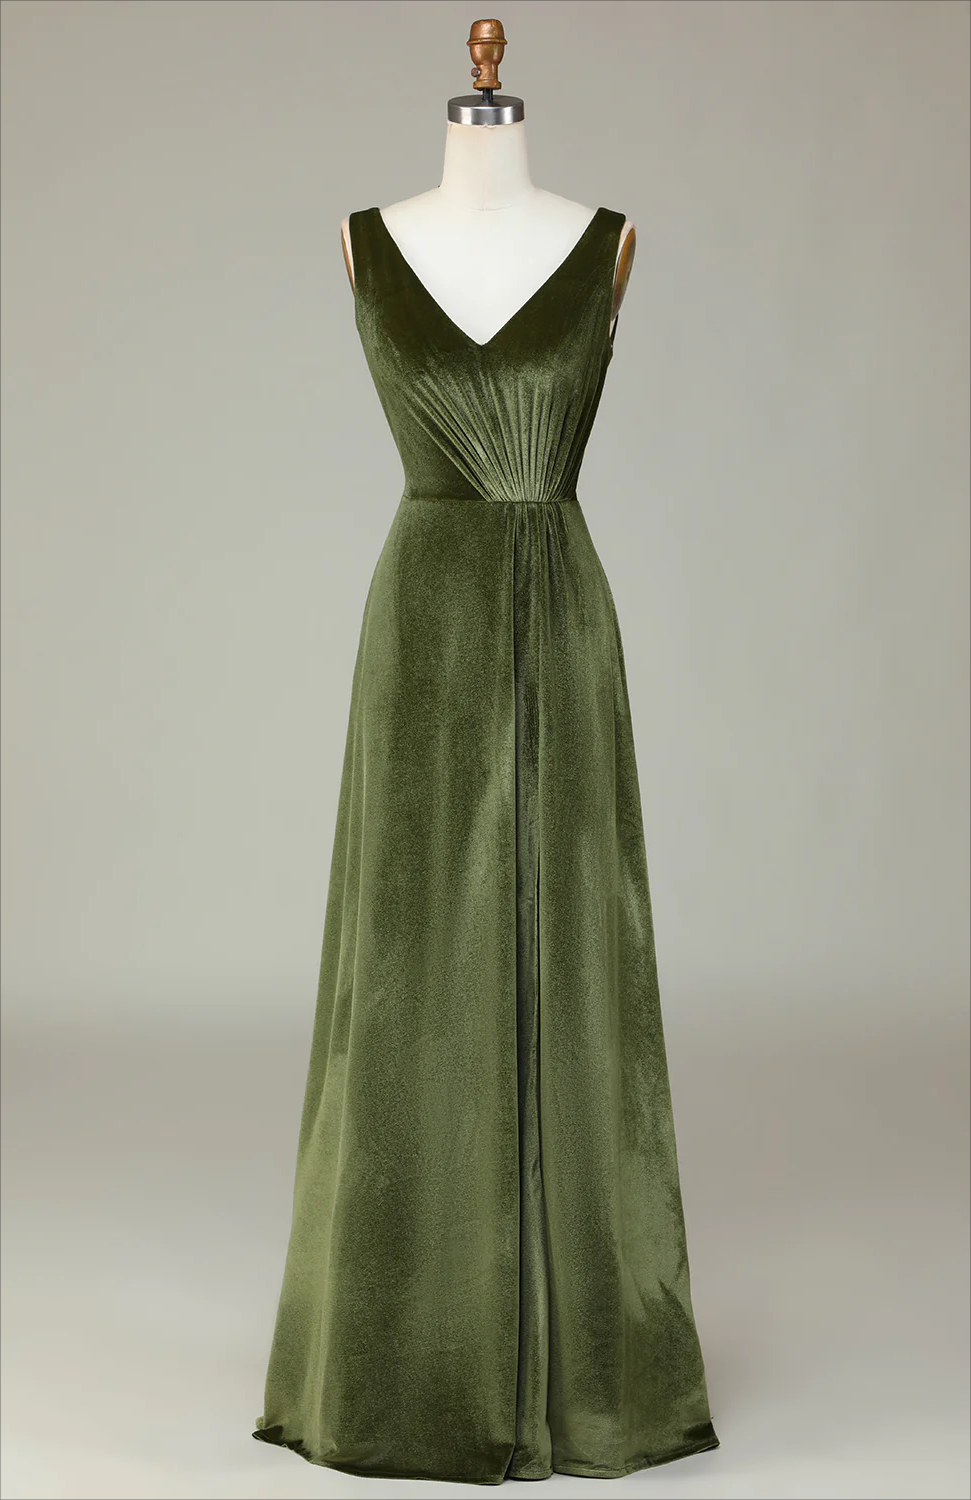 Olive Green Prom Dress,v-neck Sleeveless Olive Velvet Bridesmaid Dress